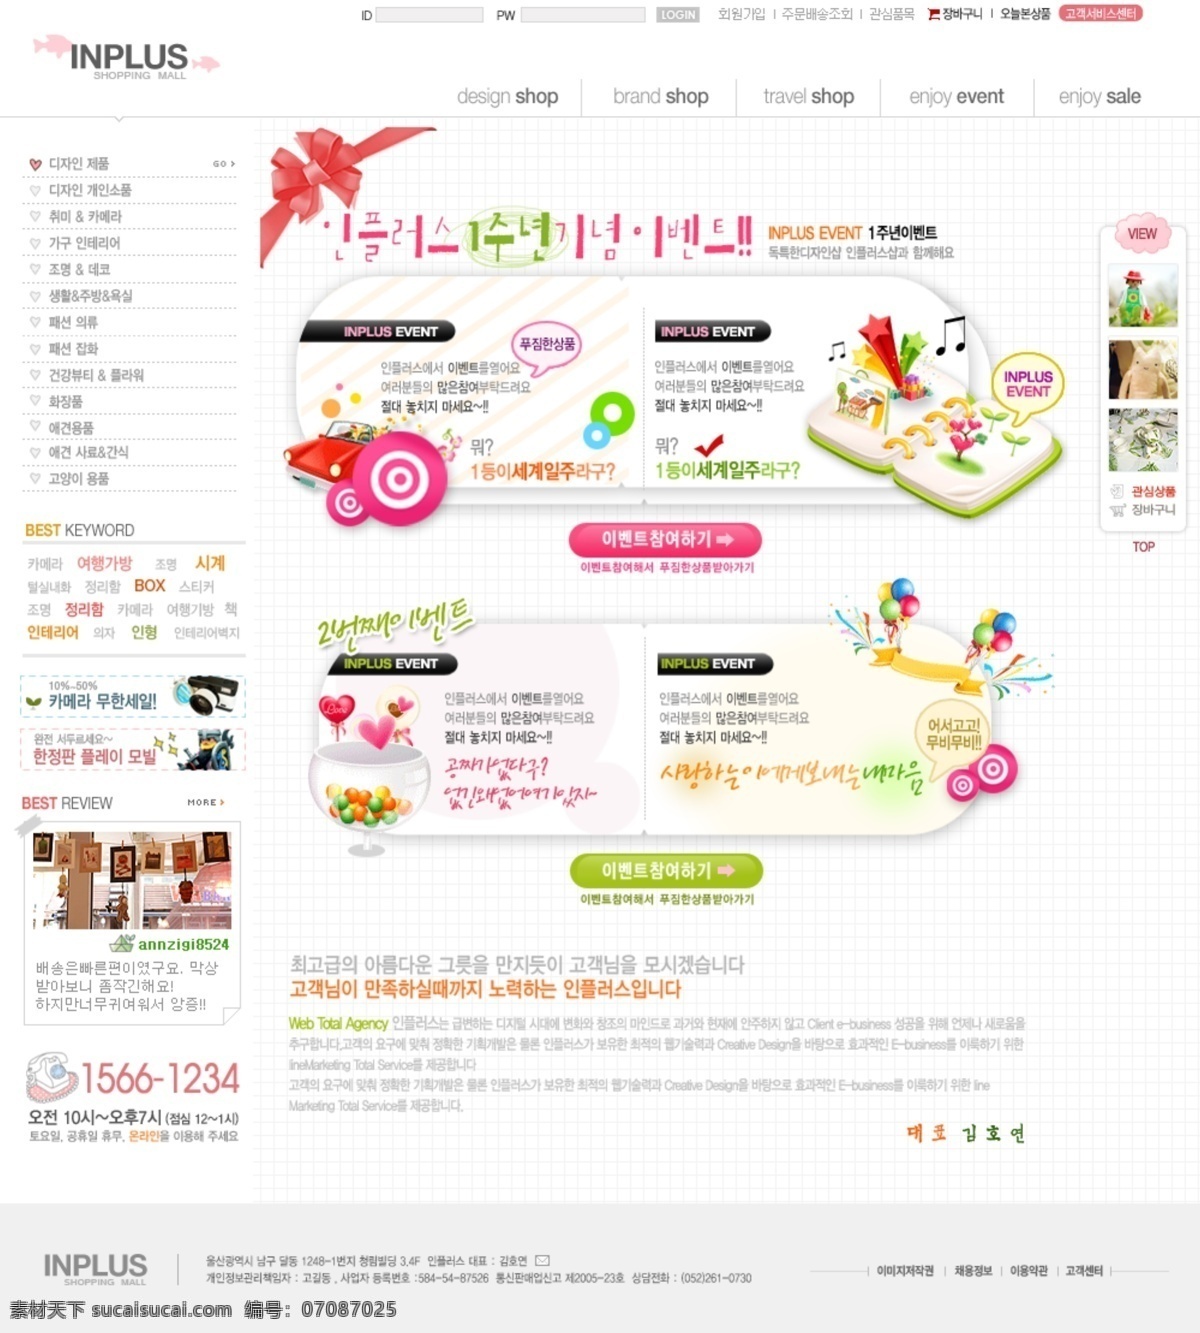 网页 模版 韩国模板 韩国网页模版 卡通网页设计 网页模板 网页模版 网页设计 源文件 漂亮 网页素材